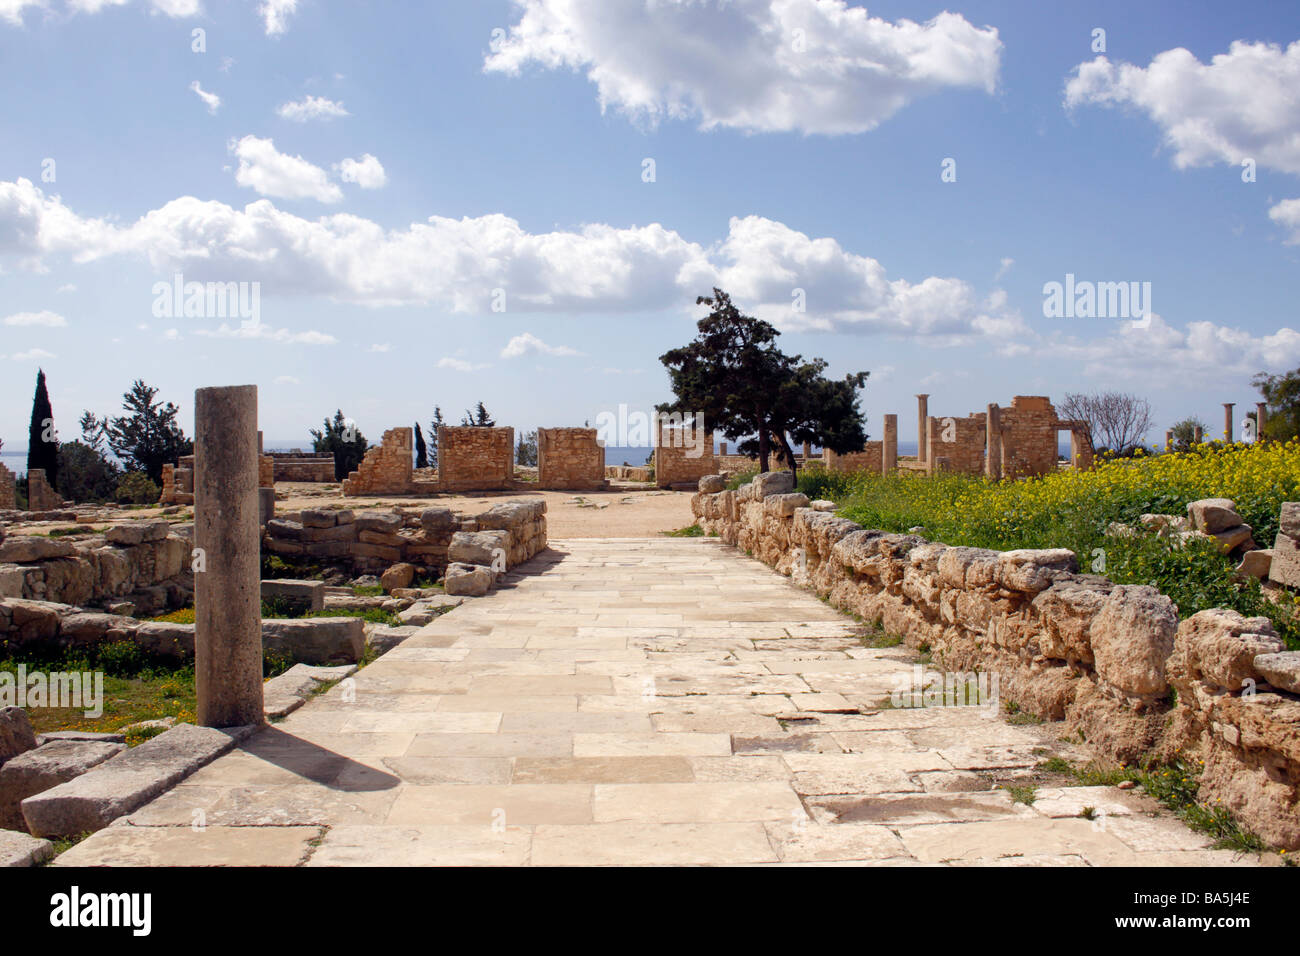 La centrale strada asfaltata che conduce al tempio di Apollo entro il santuario di Apollo. KOURION. Cipro. Foto Stock